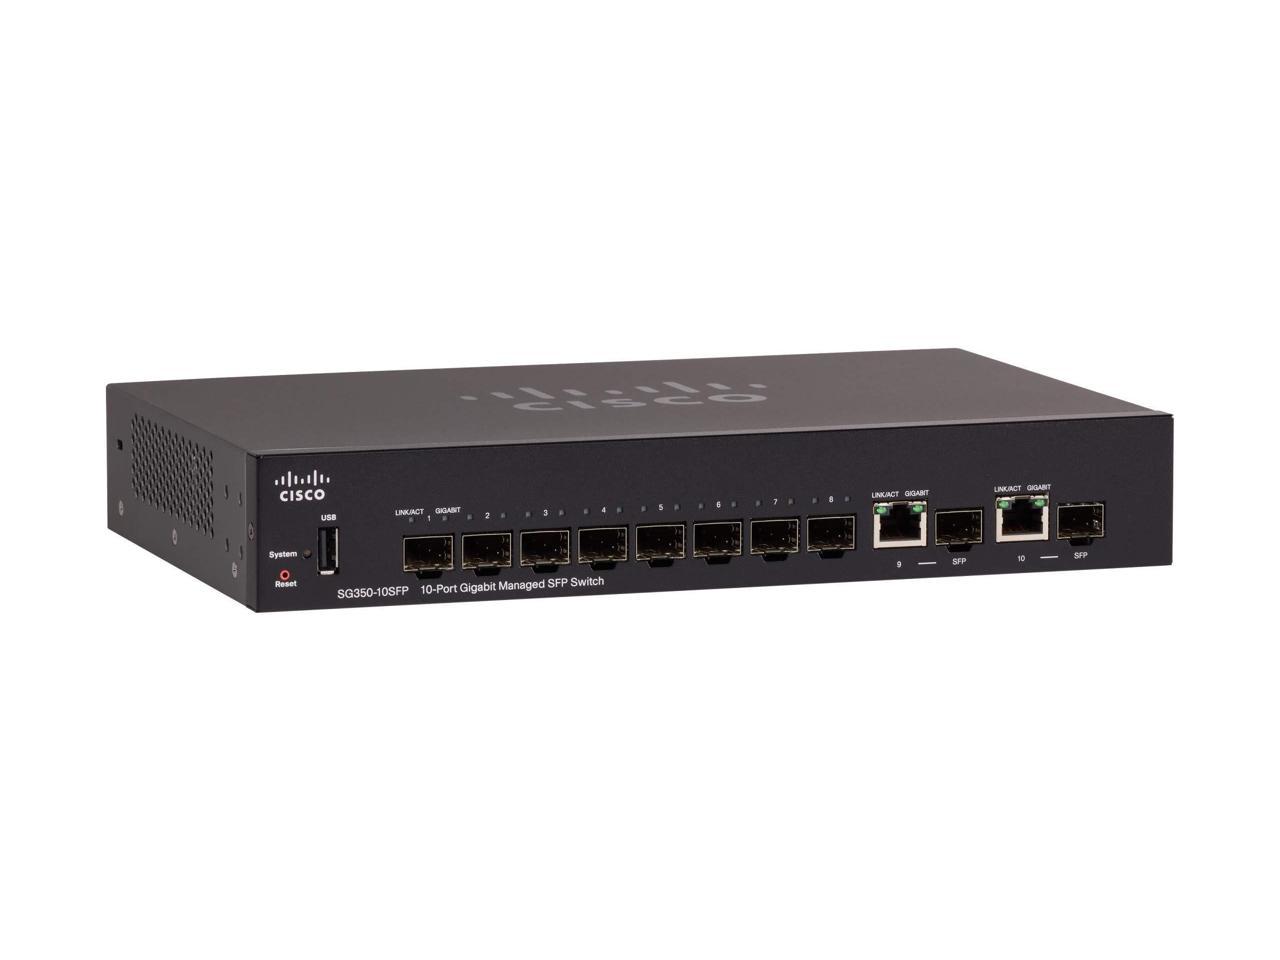 Cisco 250 Series SG350-10SFP - Switch - L3 - Managed - 8 x Gigabit SFP + 2 x combo Gigabit Ethernet/Gigabit SFP - deskto